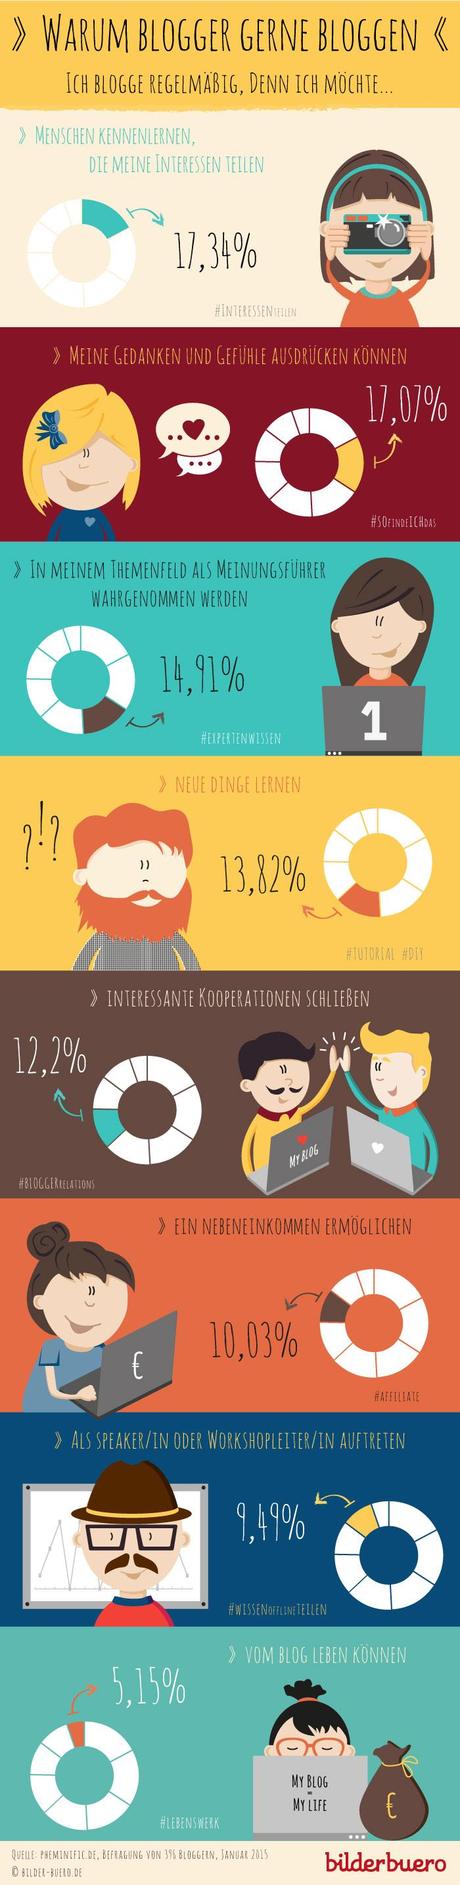 Infografik - Warum bloggen Blogger?